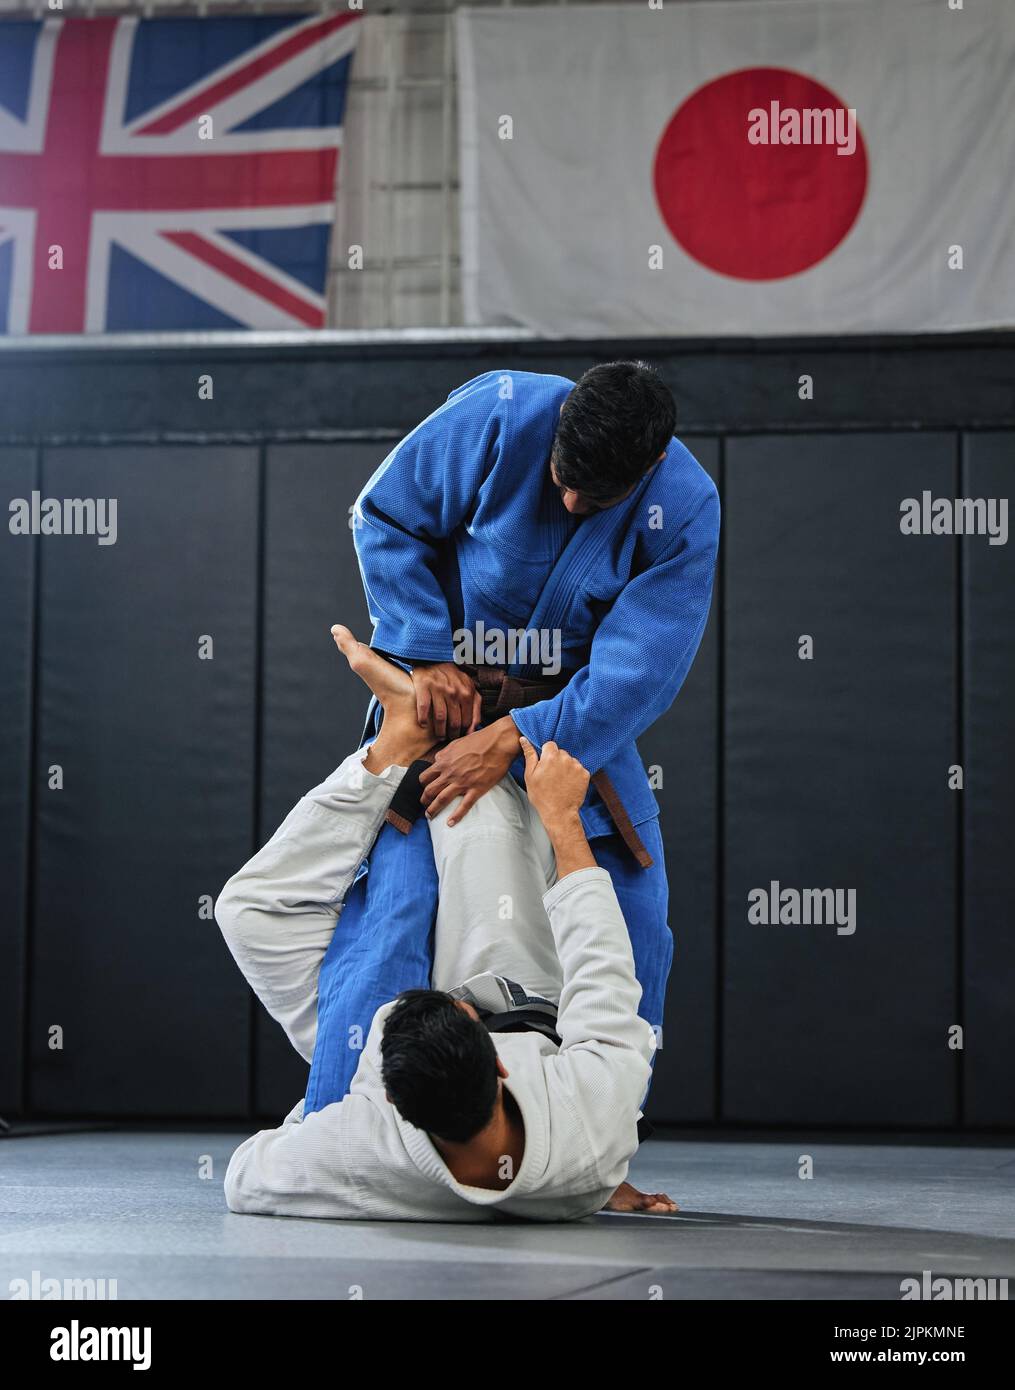 Arti marziali, combattenti di karate o judo e atleti che combattono in una competizione, una partita o un torneo. Giappone vs Regno Unito, autodifesa e protezione Foto Stock